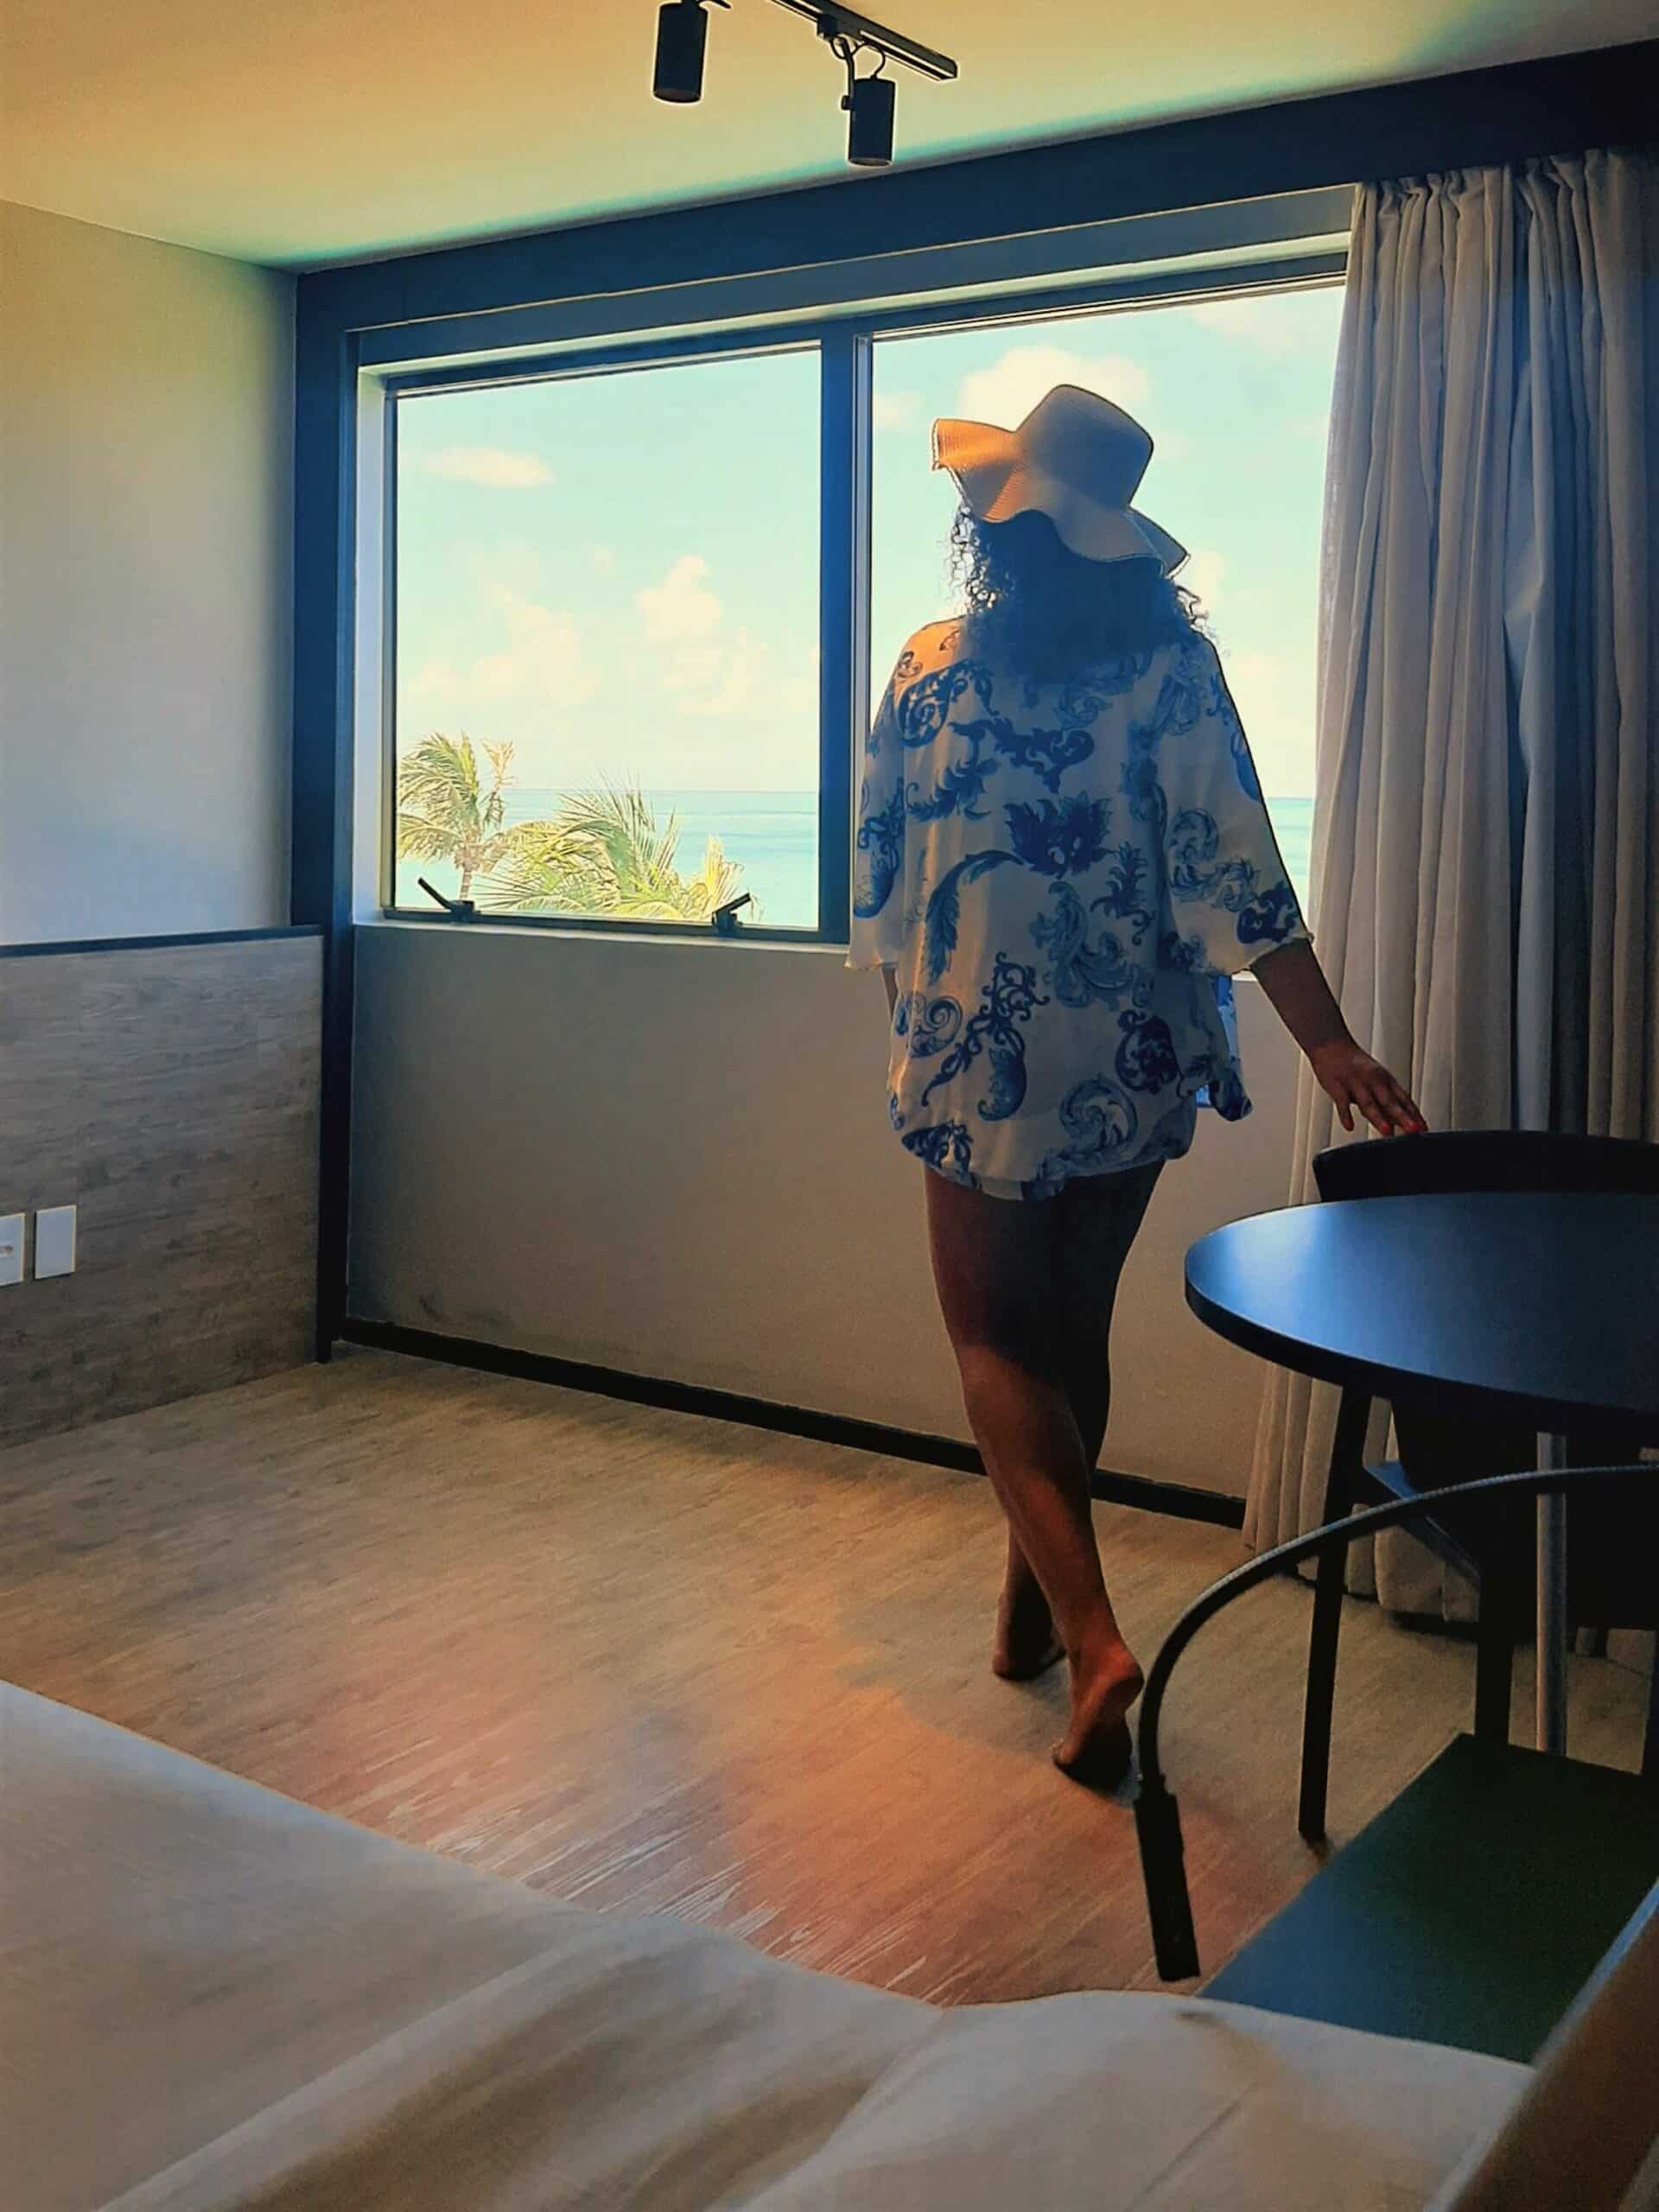 Mulher dentro de um quarto do hotel Ritz Lagoa da Anta, em Maceió, vestida de roupa branca com estampas azuis e chapeu, de costas, com uma das mãos em uma cadeira de uma mesa redonda olhando para uma janela ampla de vidro com vista do mar e folhas de uma árvore. Aparece também parte da cama